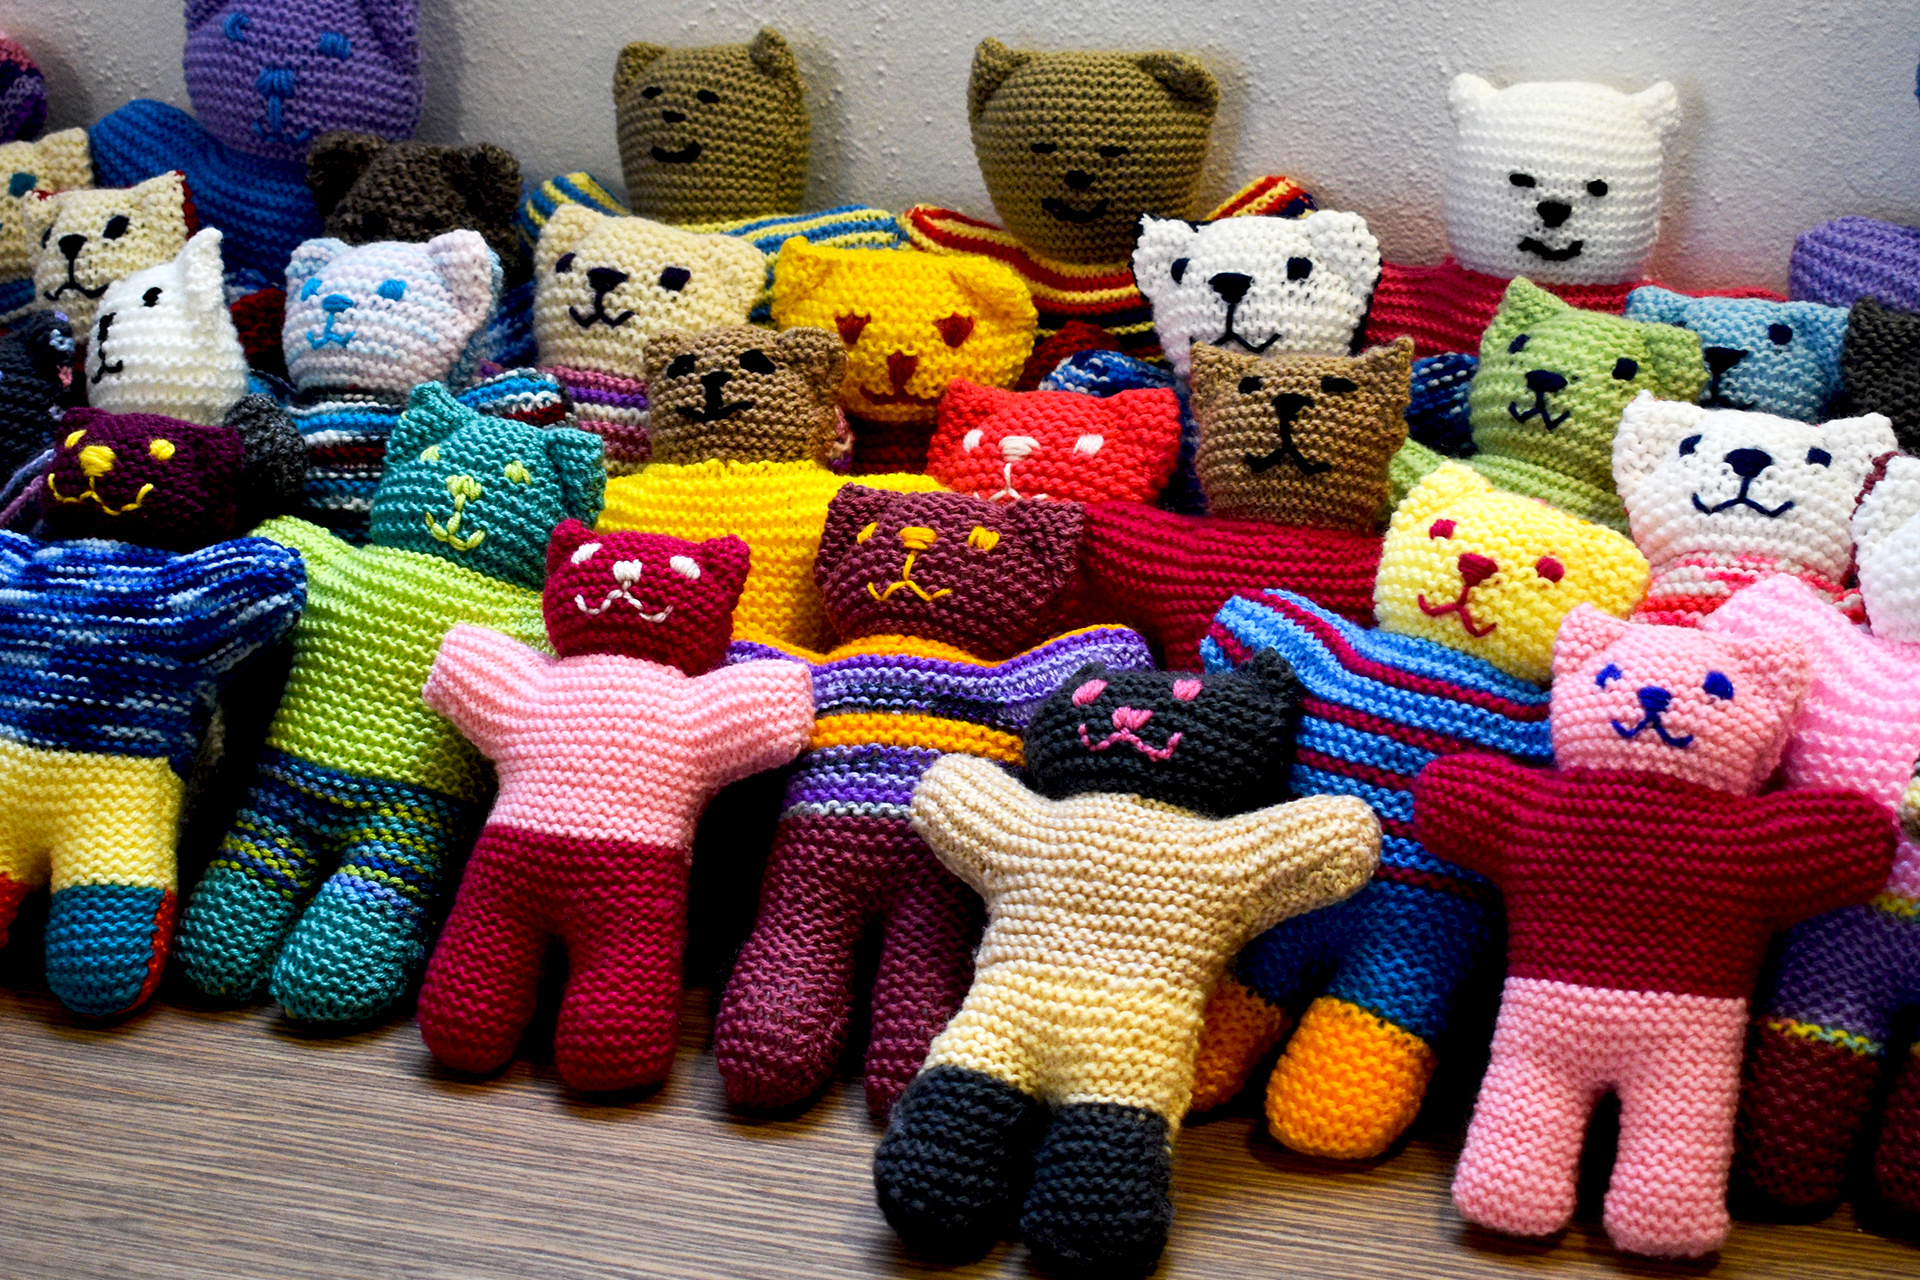 knitted trauma teddies